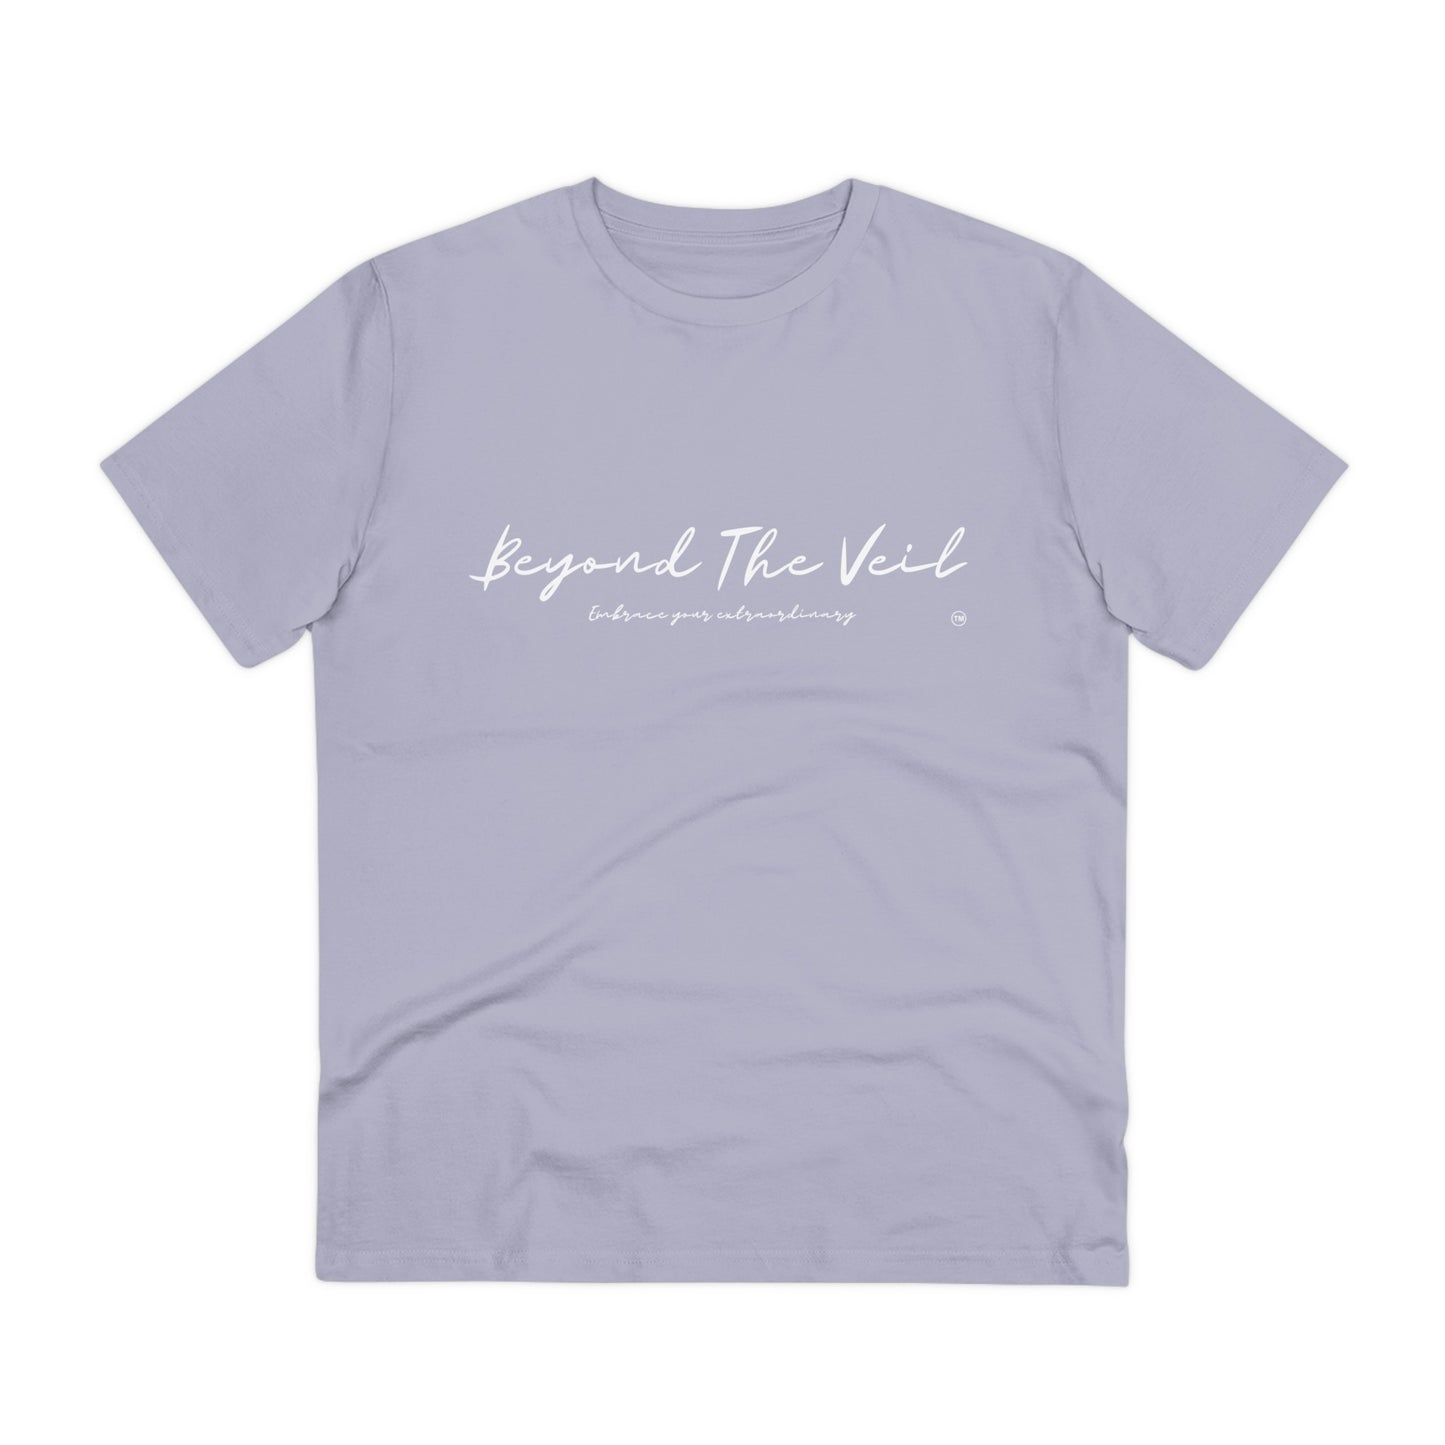 Beyond The Veil - Stripped Back T-Shirt